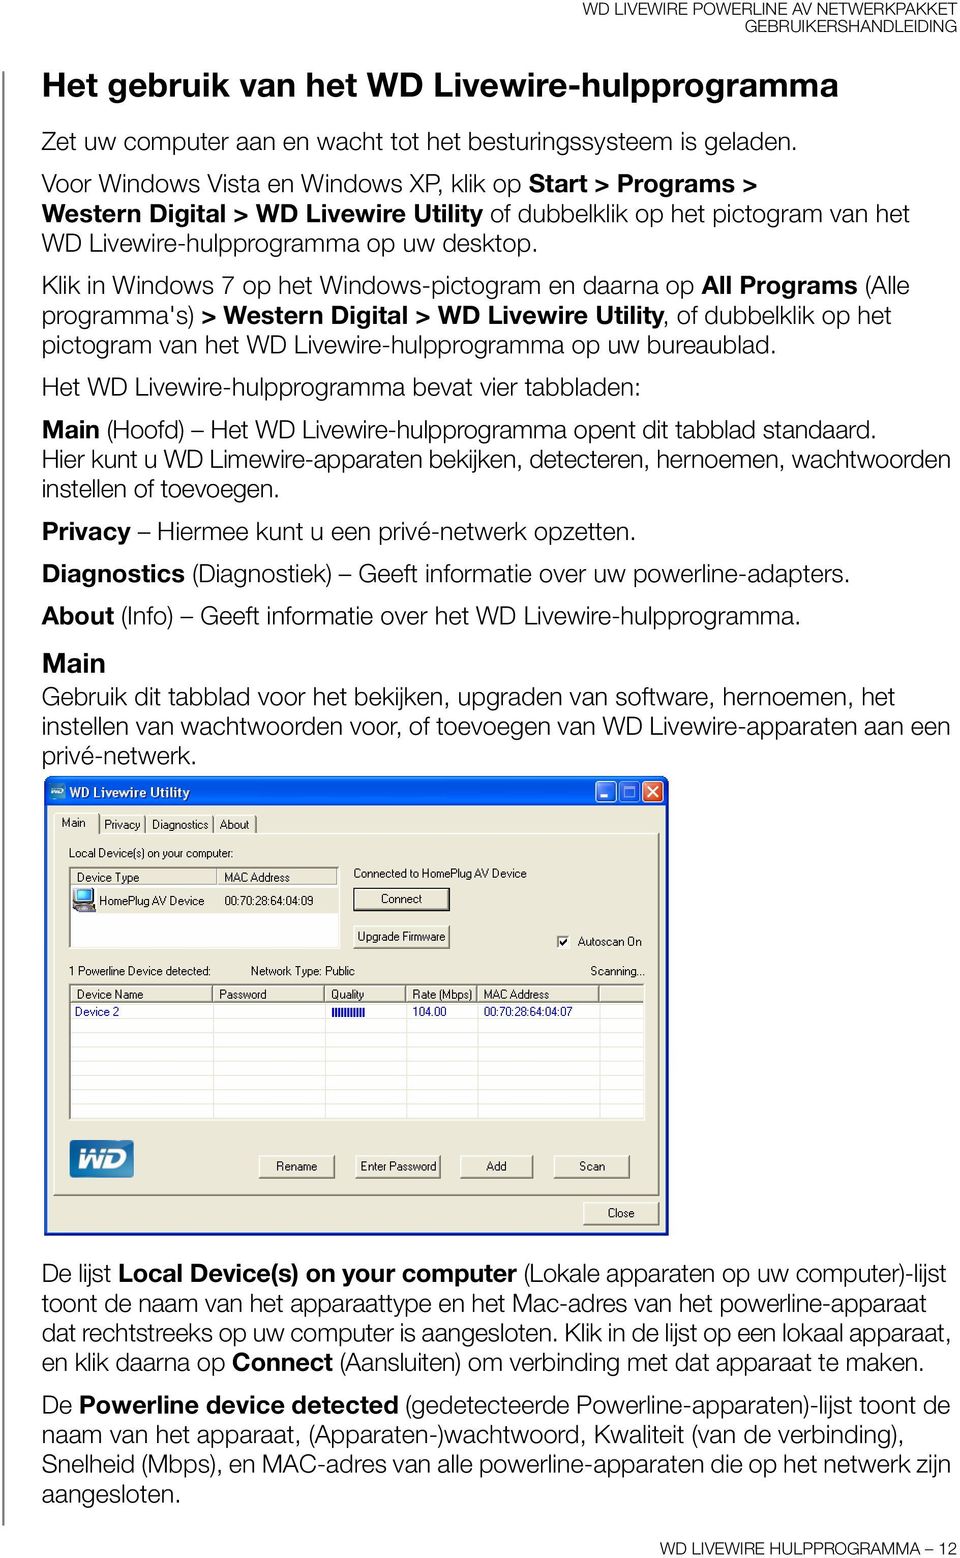 Klik in Windows 7 op het Windows-pictogram en daarna op All Programs (Alle programma's) > Western Digital > WD Livewire Utility, of dubbelklik op het pictogram van het WD Livewire-hulpprogramma op uw